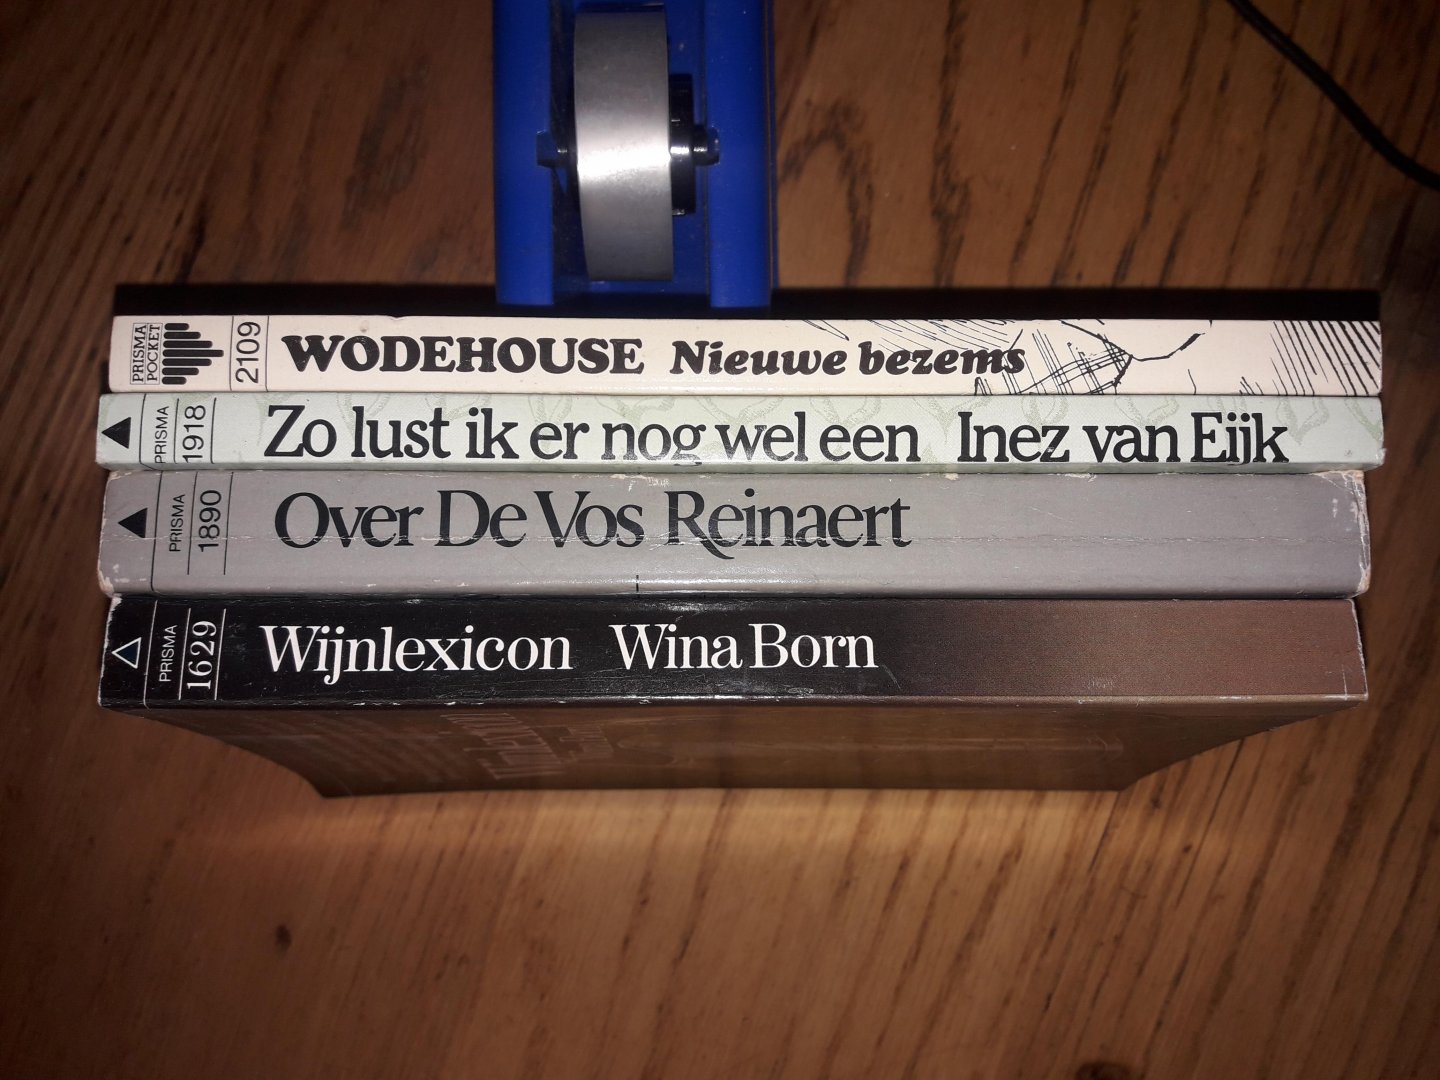 Born / Nimwegen (vert) / van Eijk / Wodehouse - Wijnlexicon / De vos Reinaert / Zo lust ik er nog wel een / Nieuwe bezems